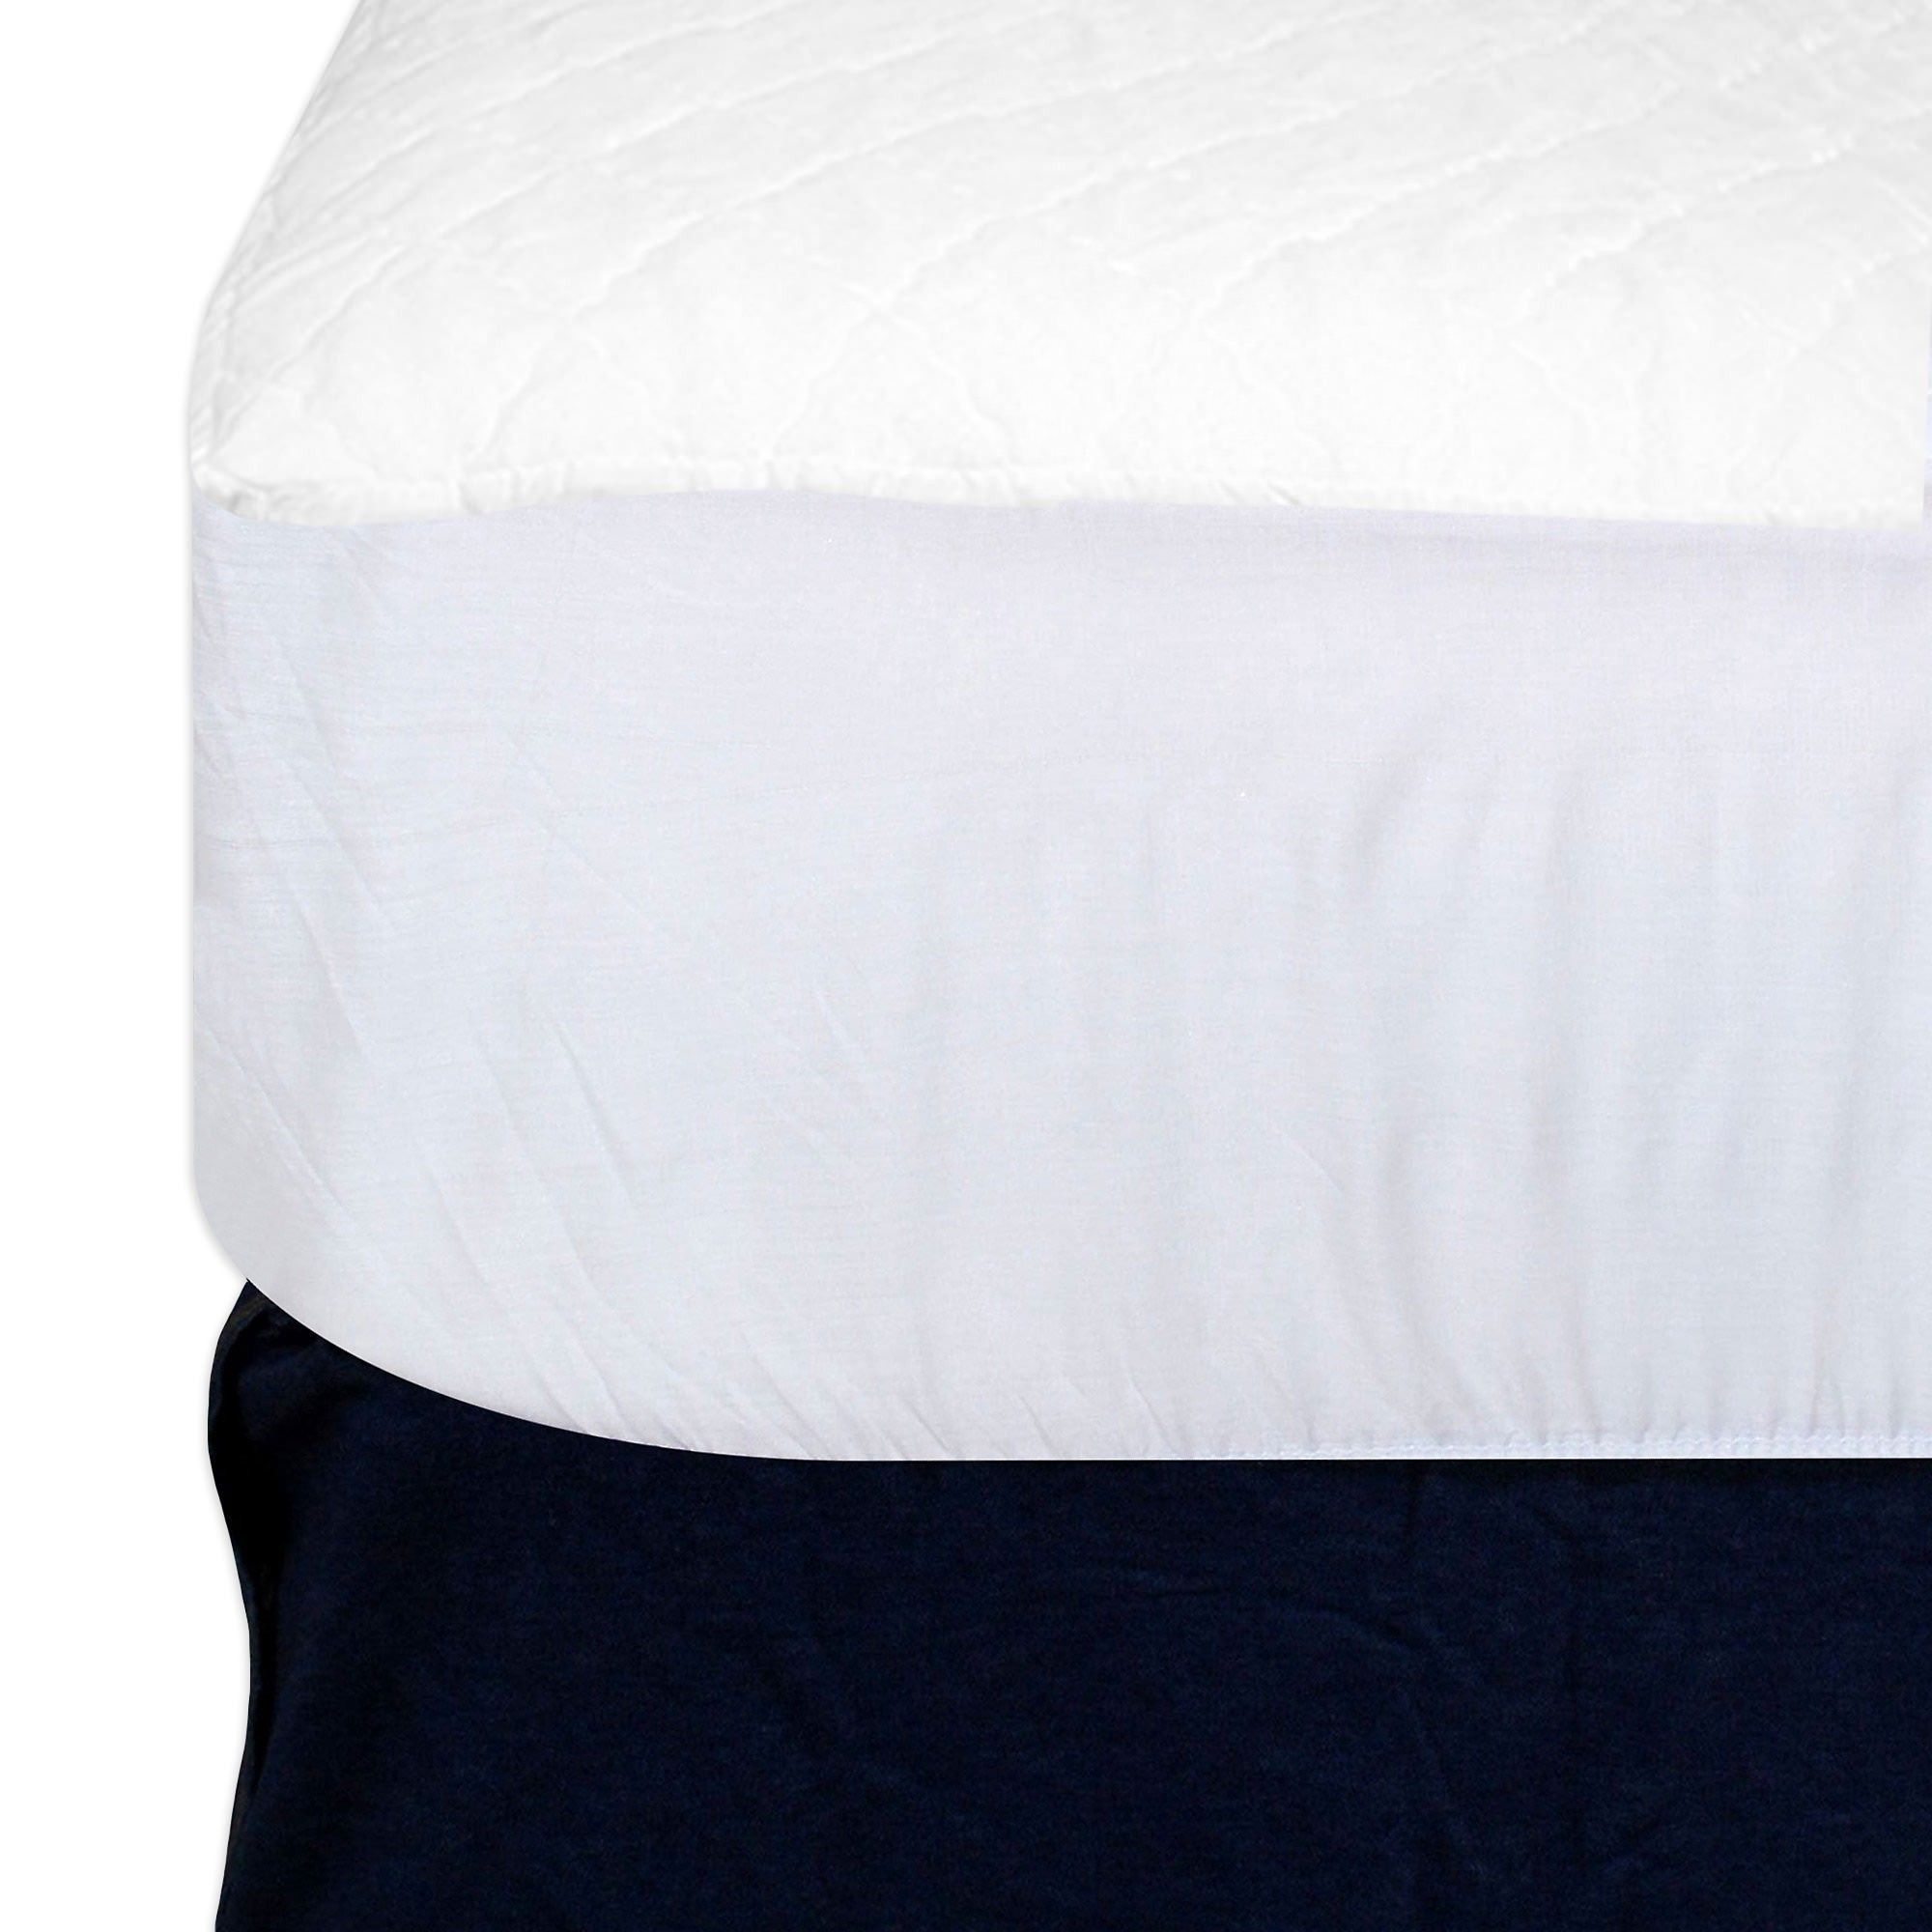 Manual for purchasing a waterproof sleeping pad defender